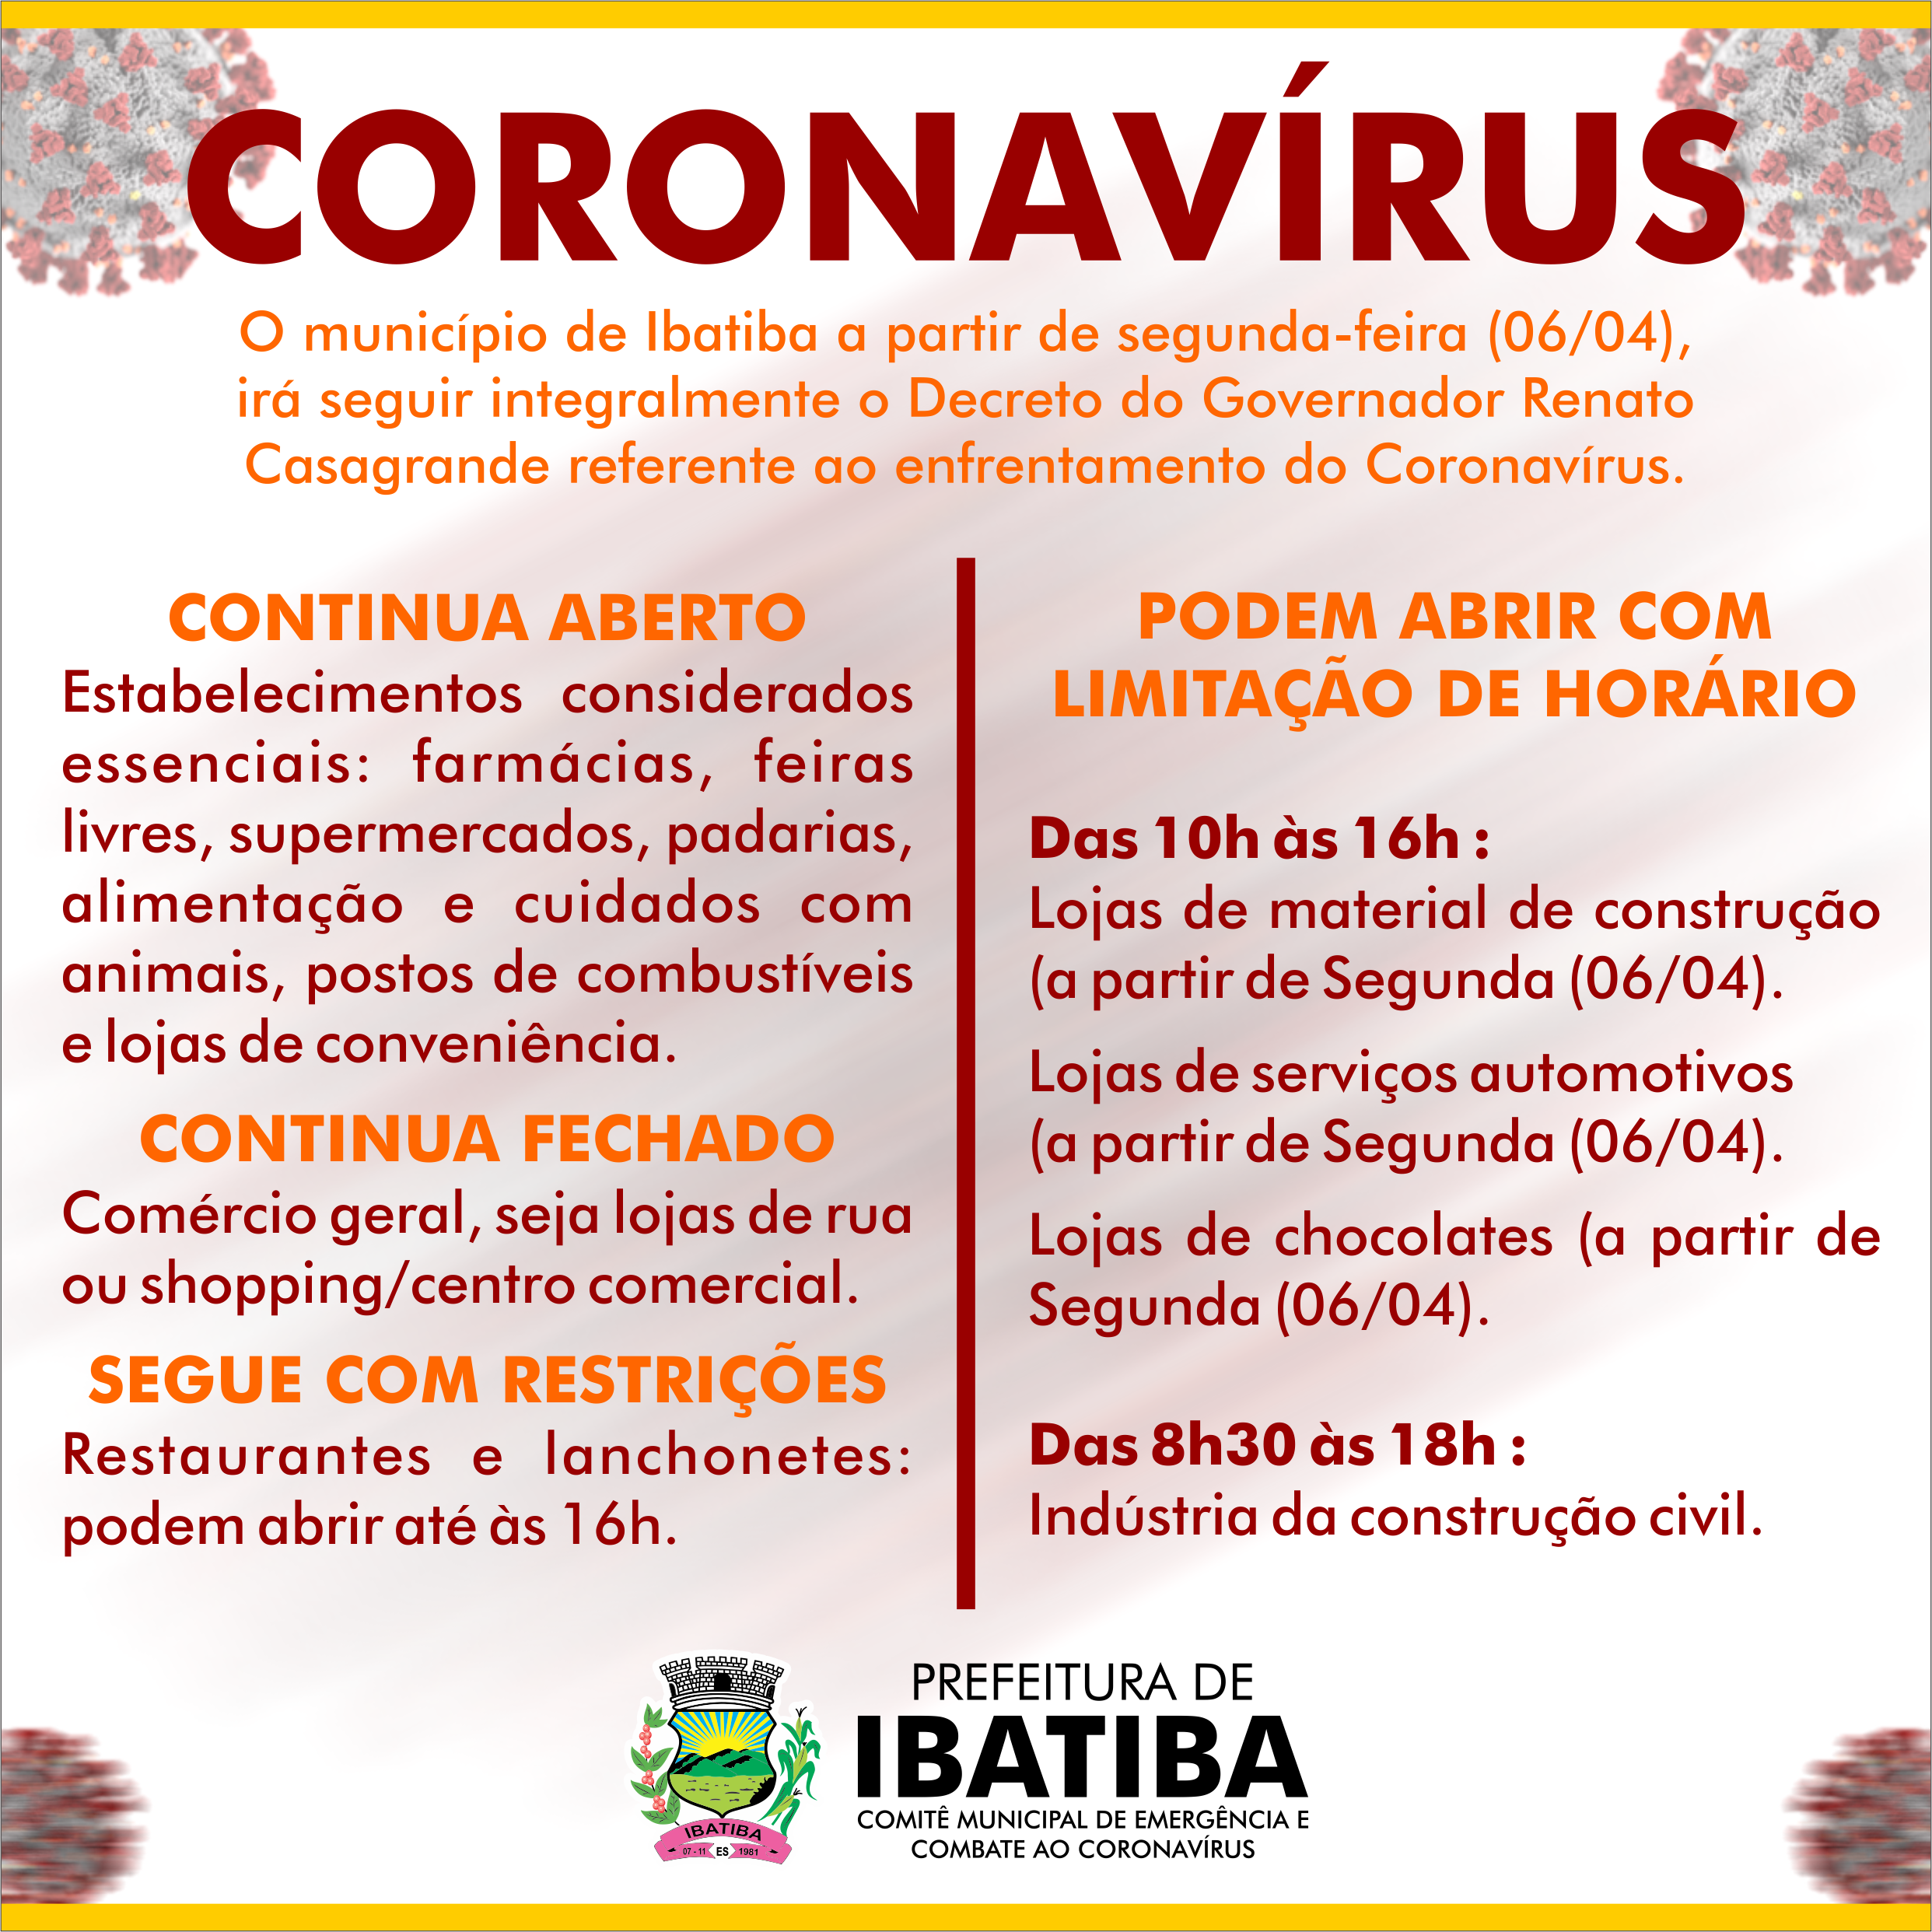 Coronavírus: Ibatiba a partir de segunda-feira (06/04), irá seguir integralmente o Decreto nº 4621-R do Governador Renato Casagrande